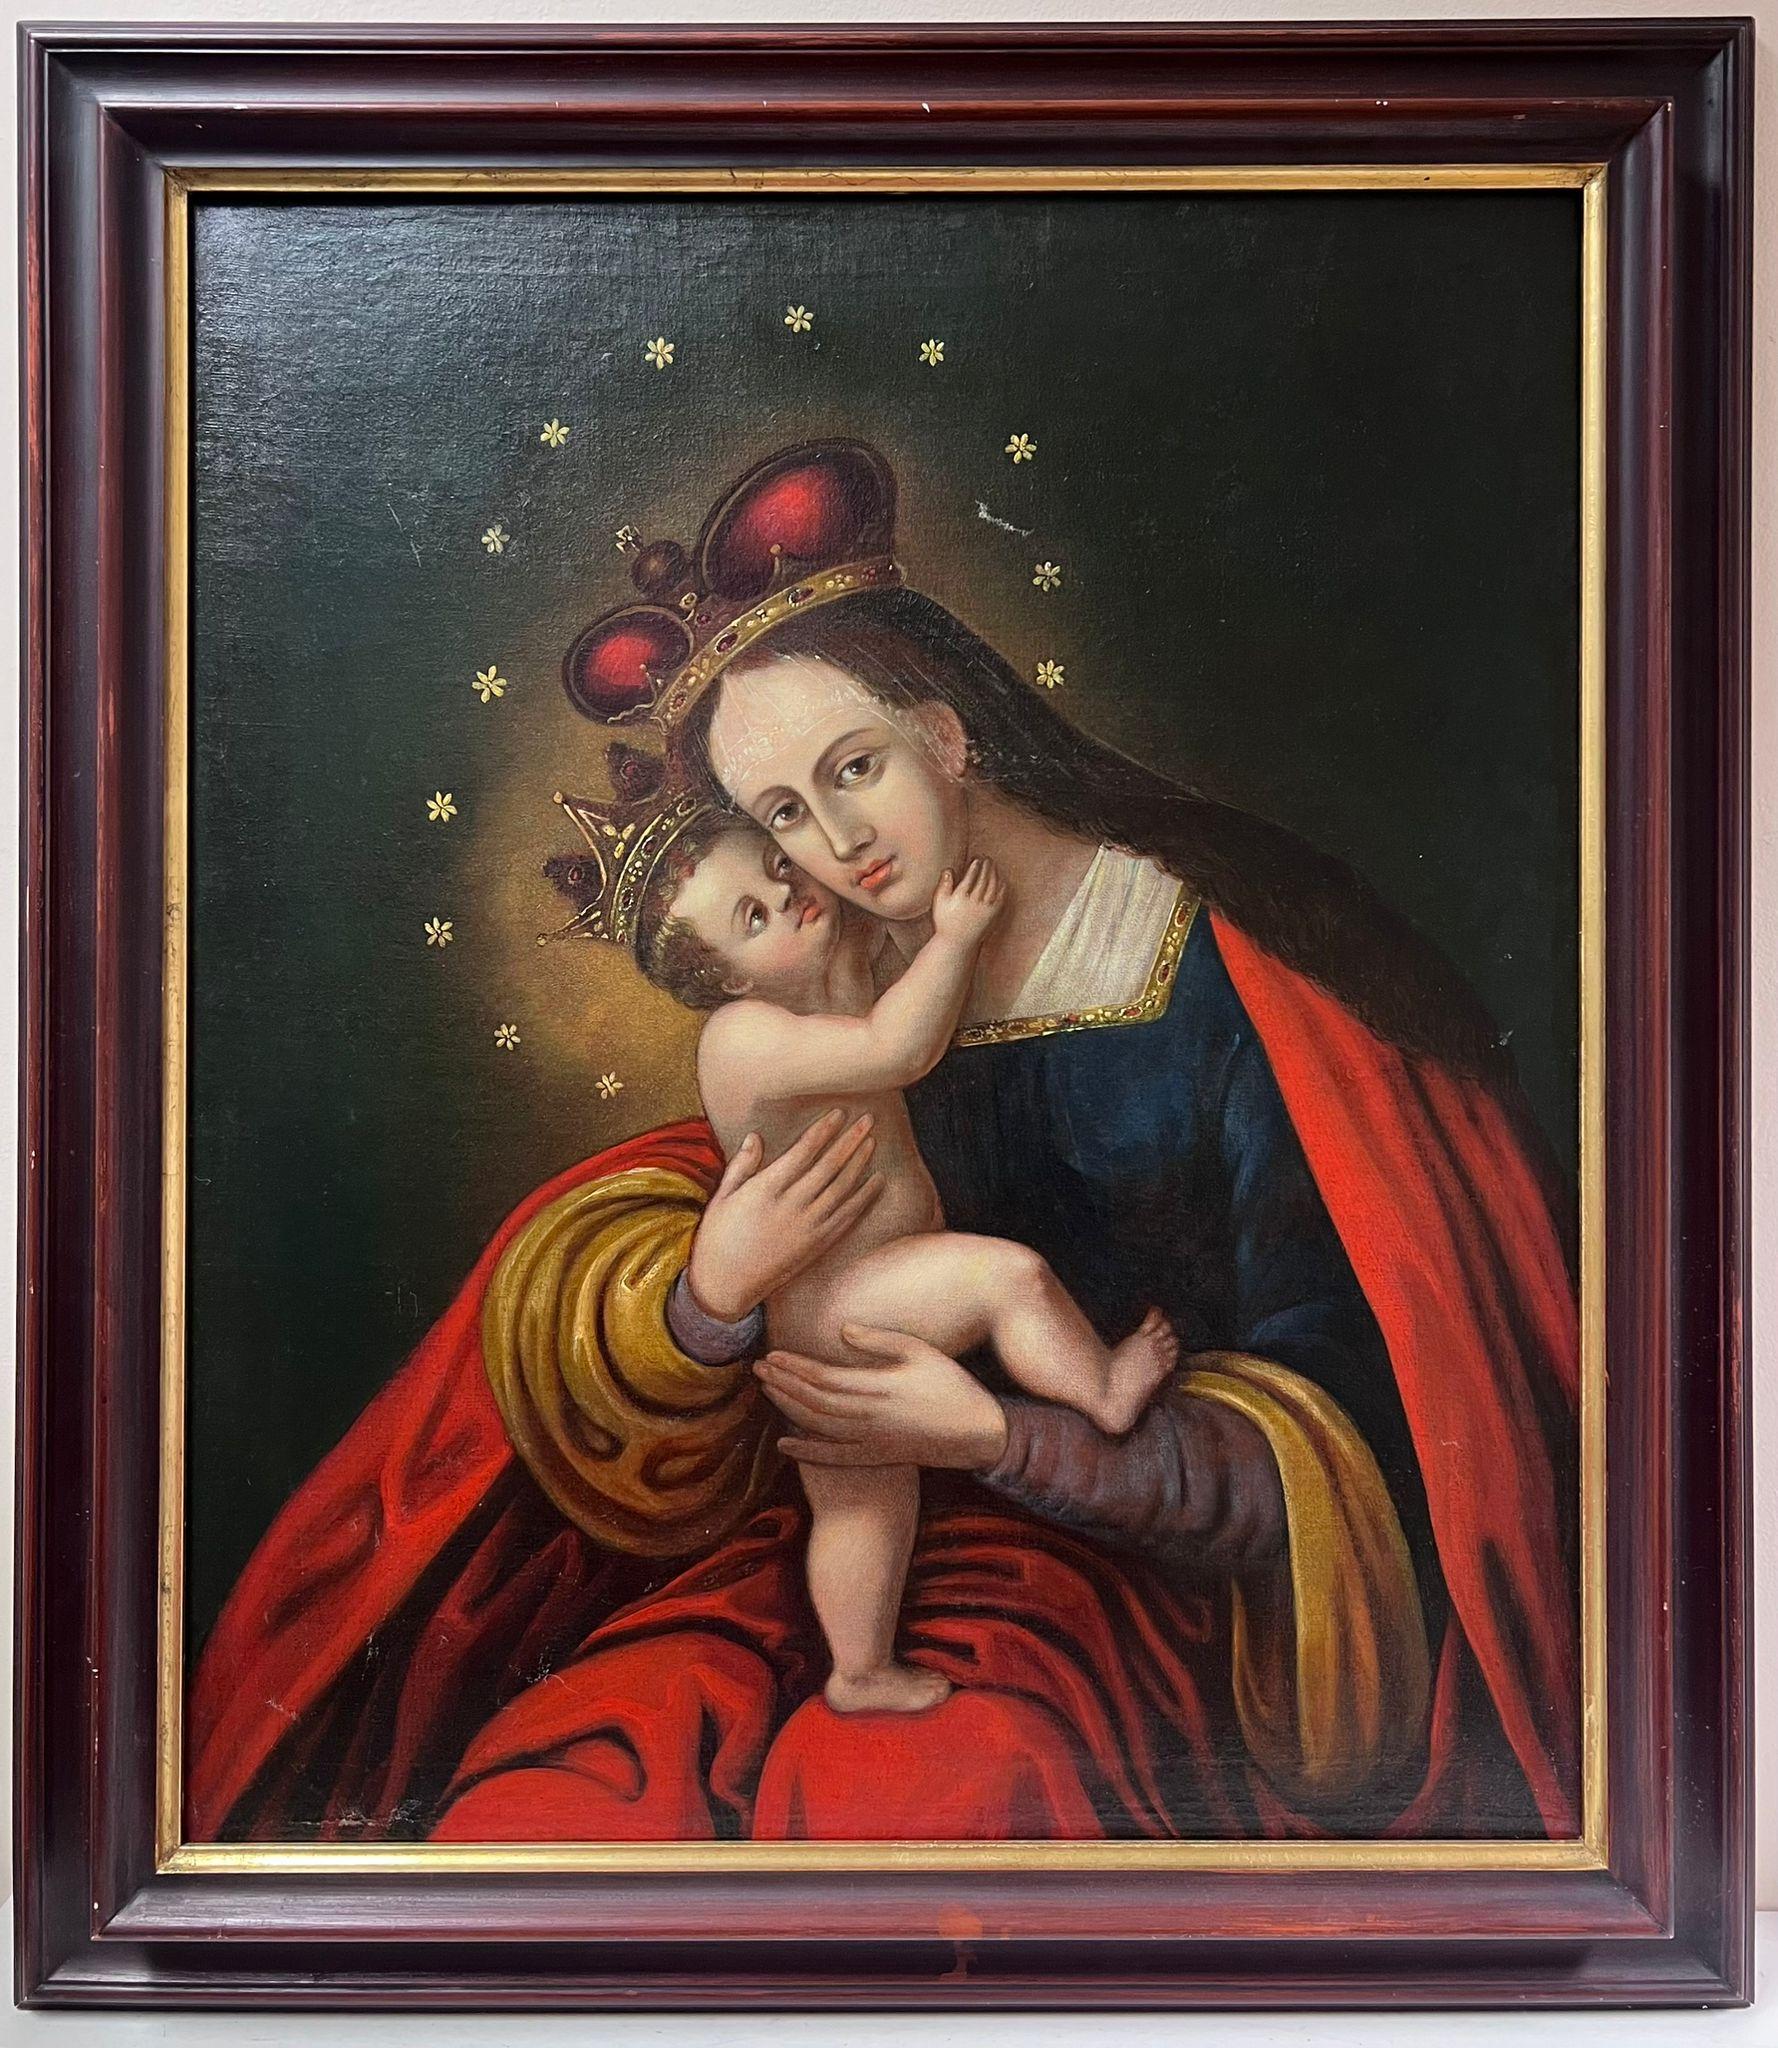 1800's Old Master Ölgemälde Porträt der Madonna & Christ Child  – Painting von Eastern European Old Master